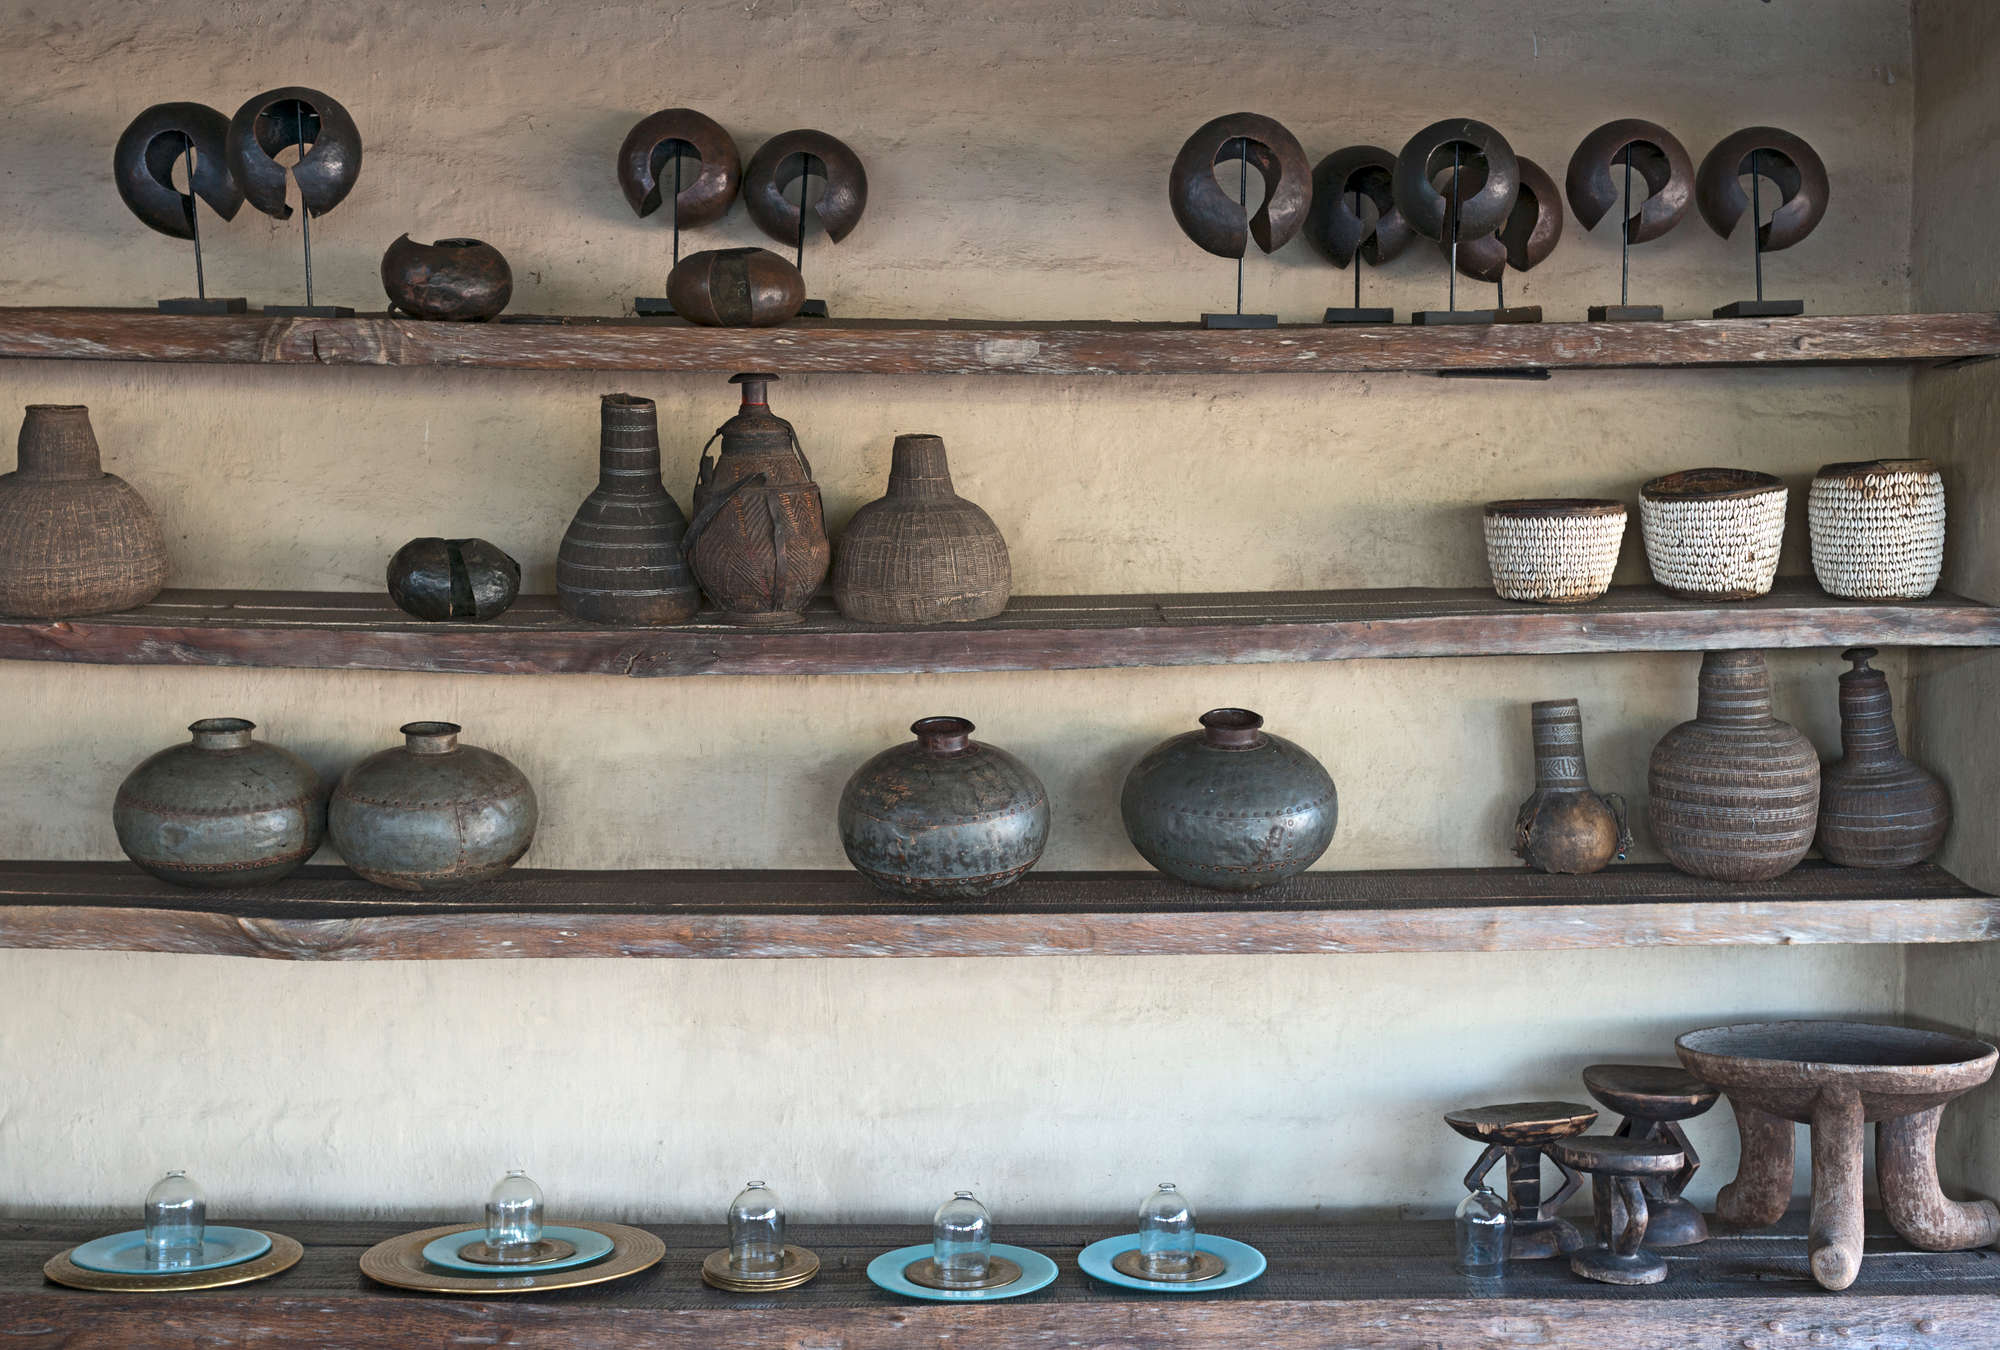             Fotomurali in ceramica etnica in stile Africa vintage
        